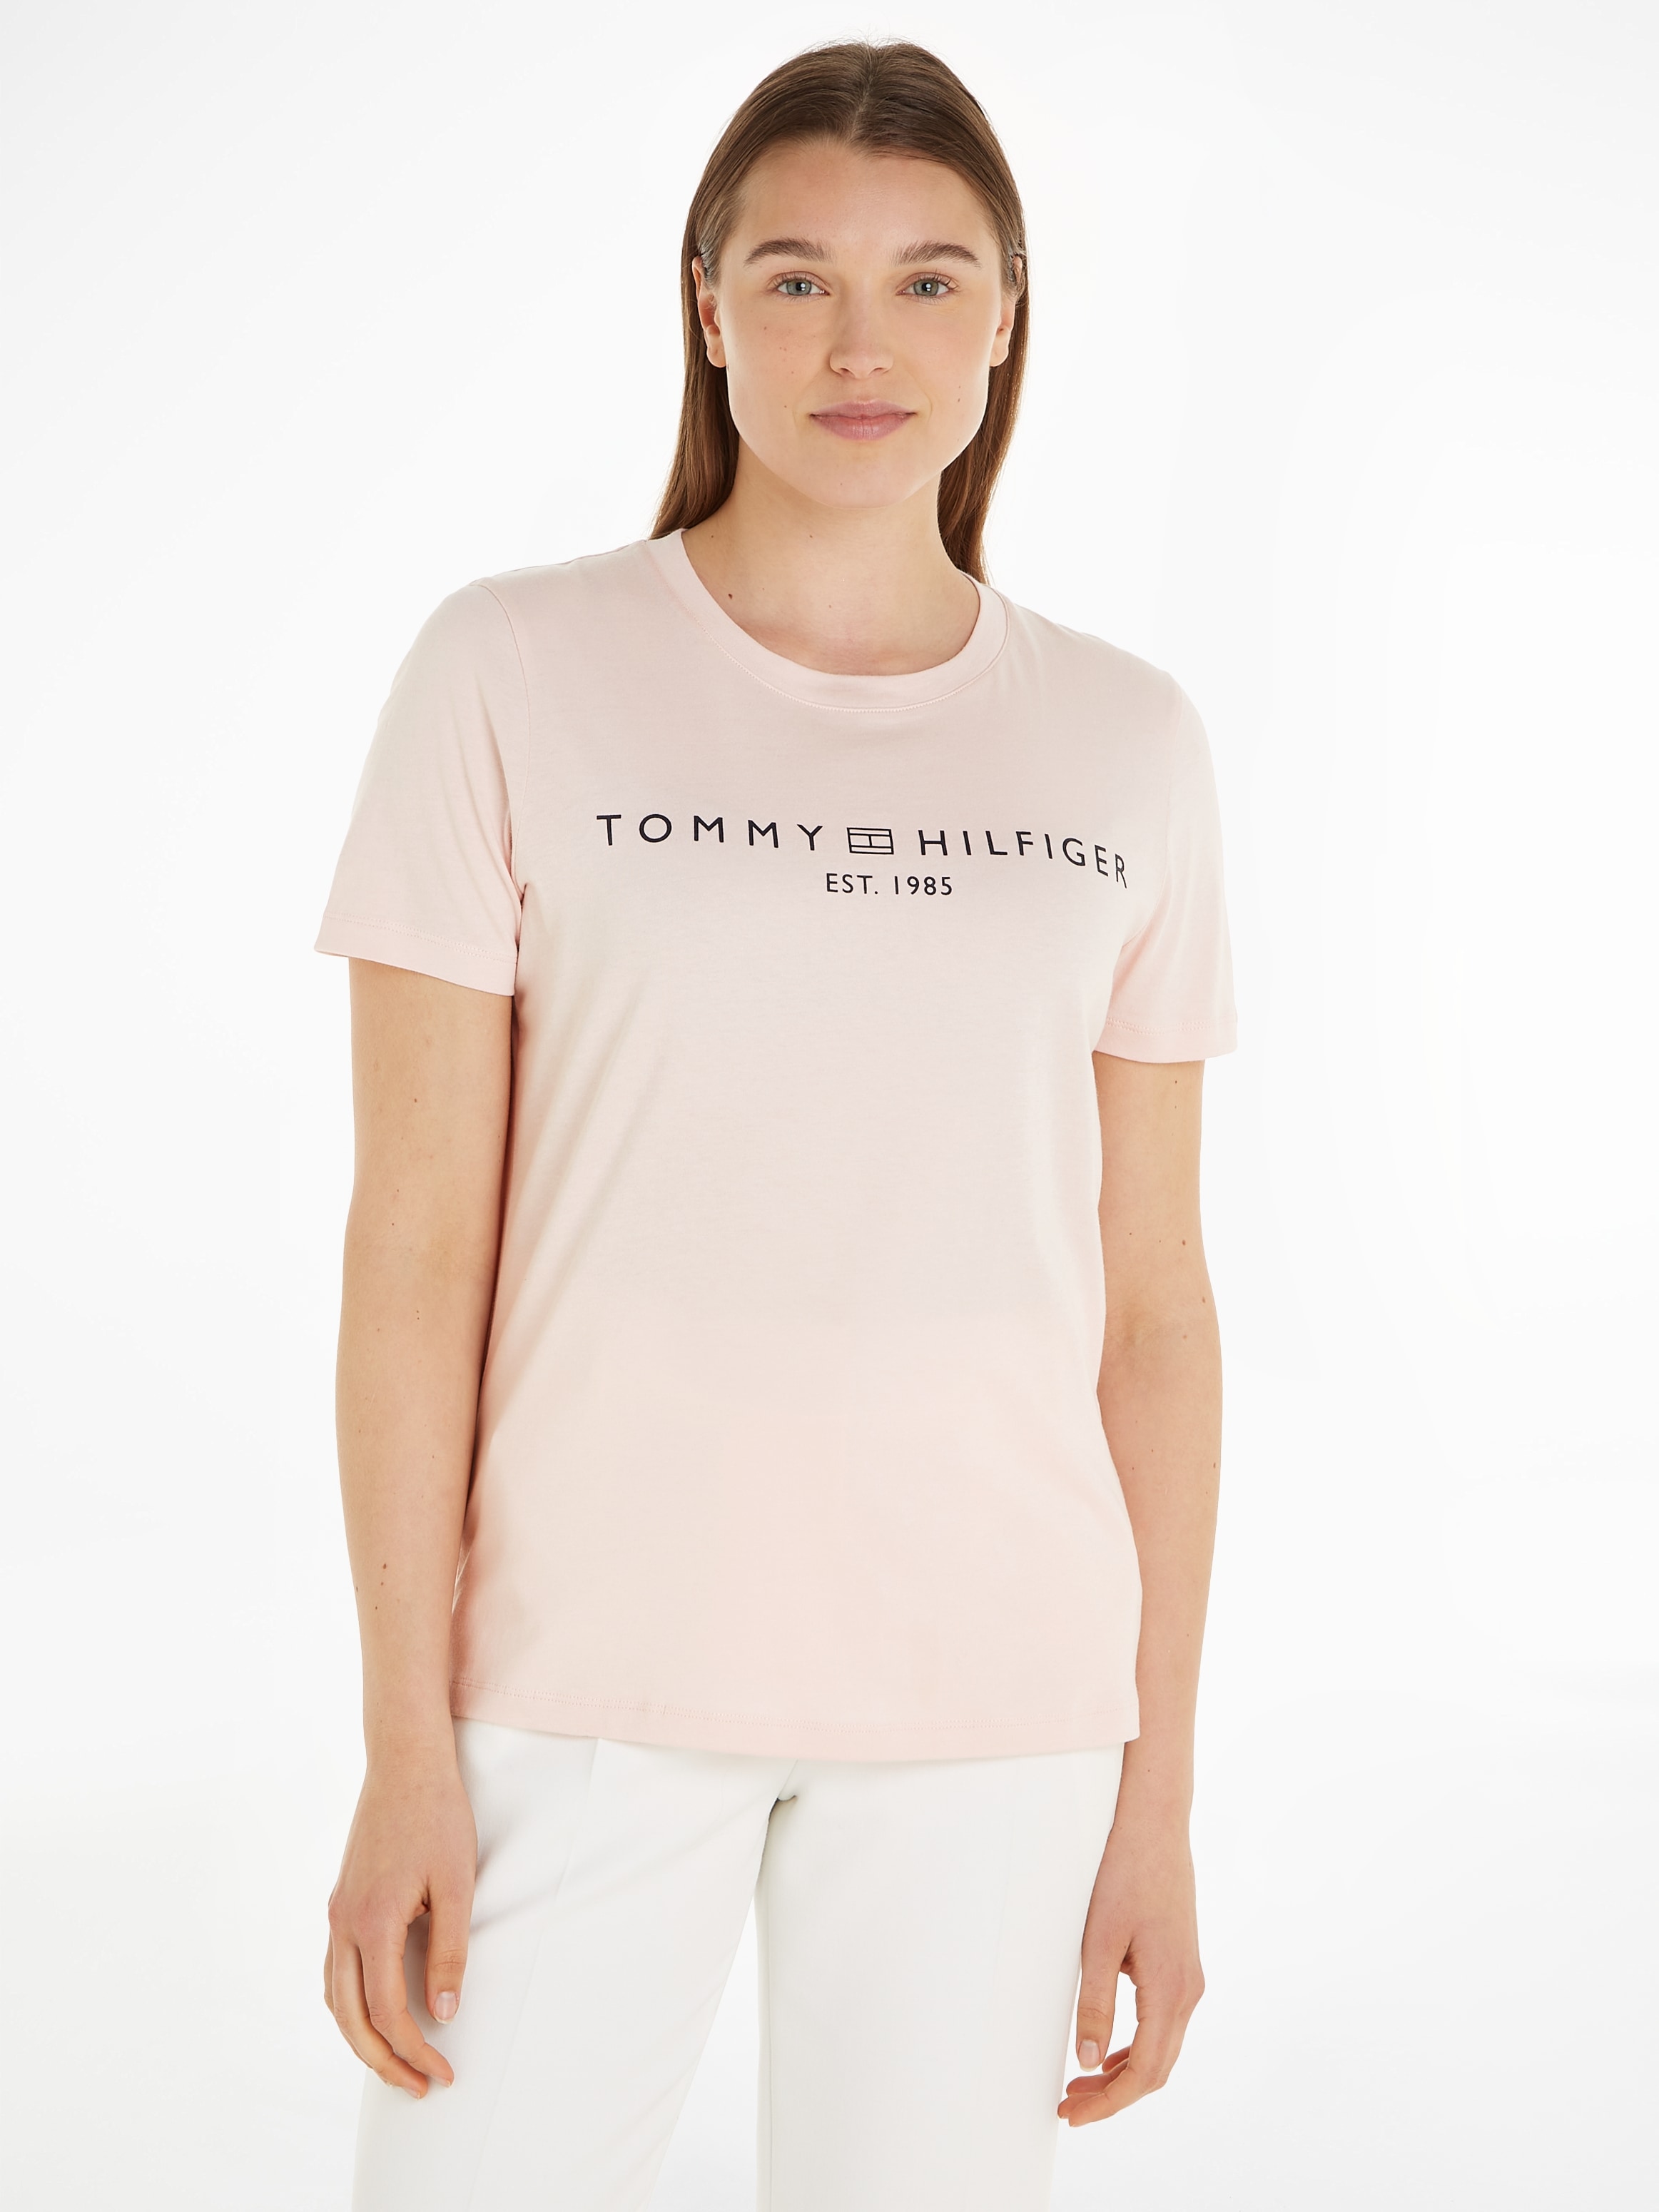 Tommy Hilfiger online »REG auf mit T-Shirt Brust SS«, der C-NK Markenlabel CORP LOGO